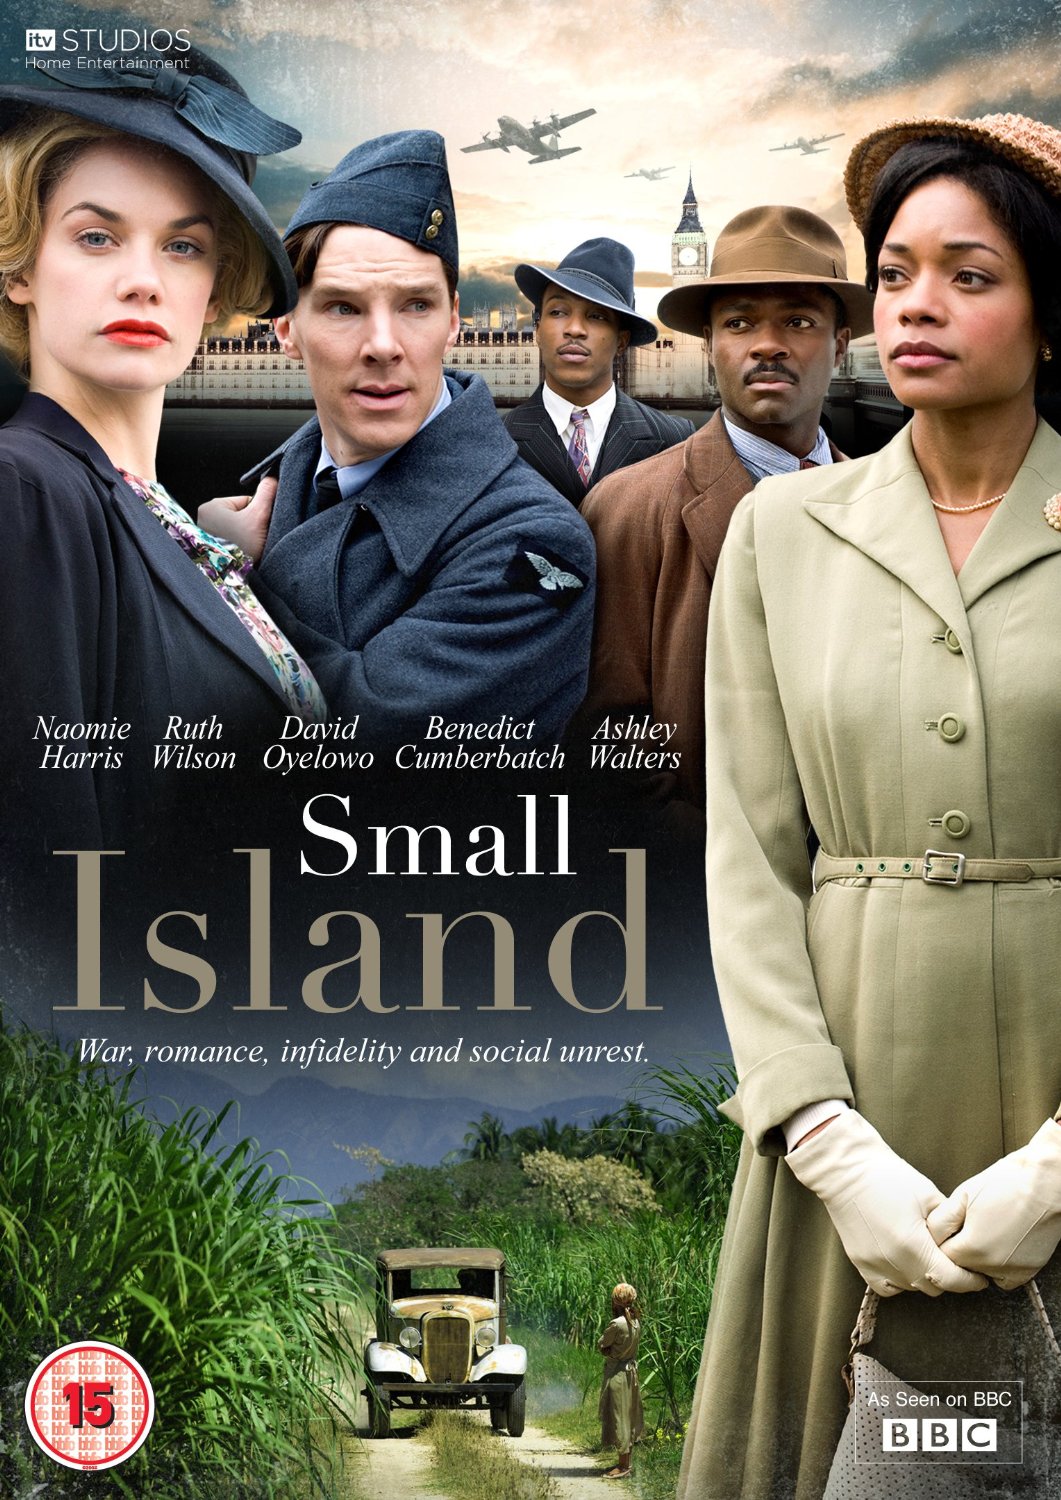 Ashley Walters در صحنه فیلم سینمایی Small Island به همراه بندیکت کامبربچ، دیوید اویلوو، نائومی هریس و Ruth Wilson